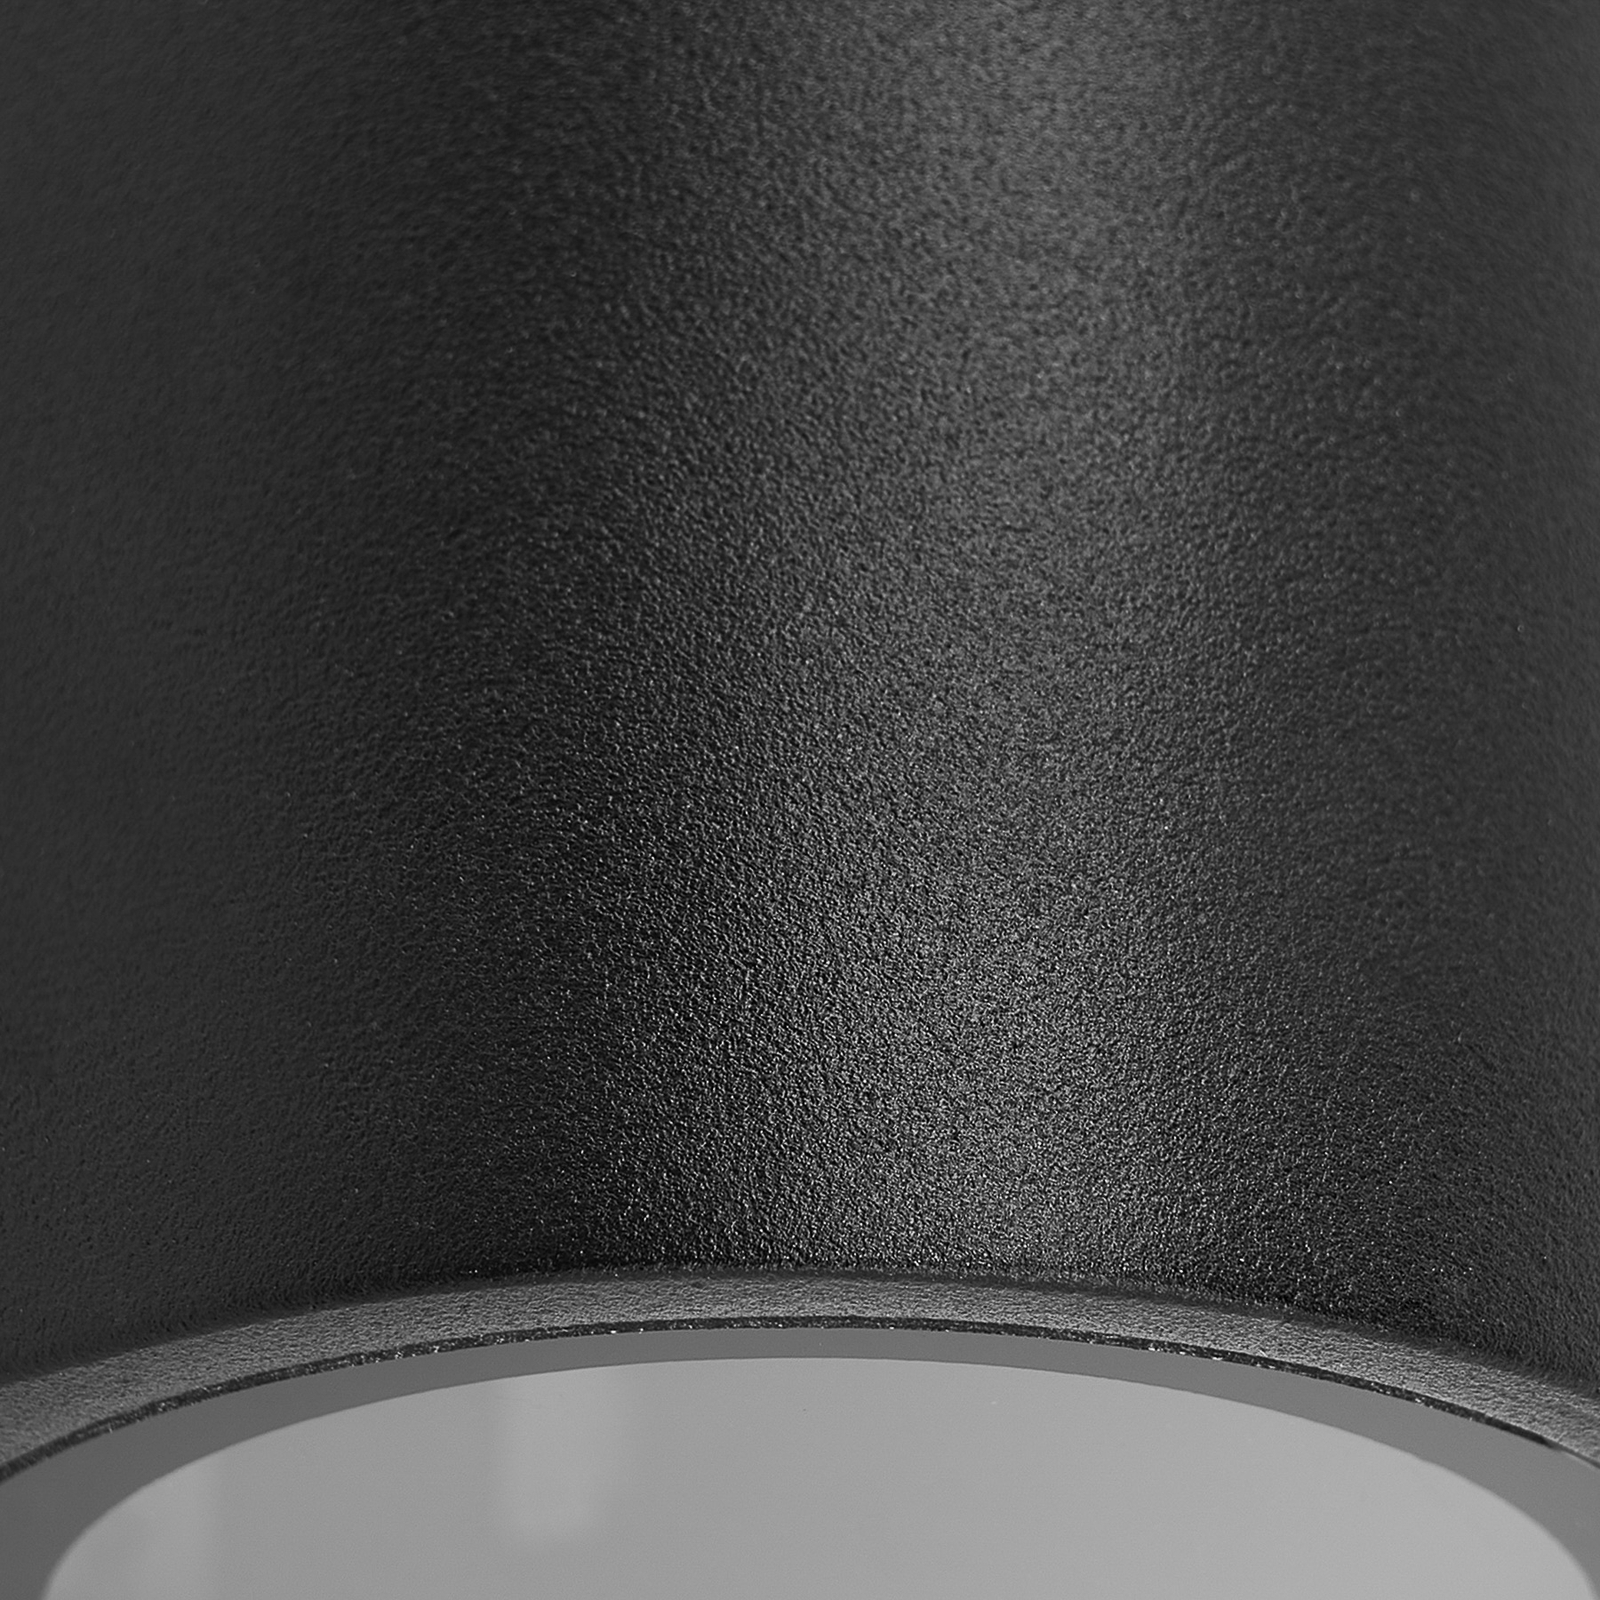 Prios buitenwandlamp Tetje, zwart, rond, 10 cm, set van 4